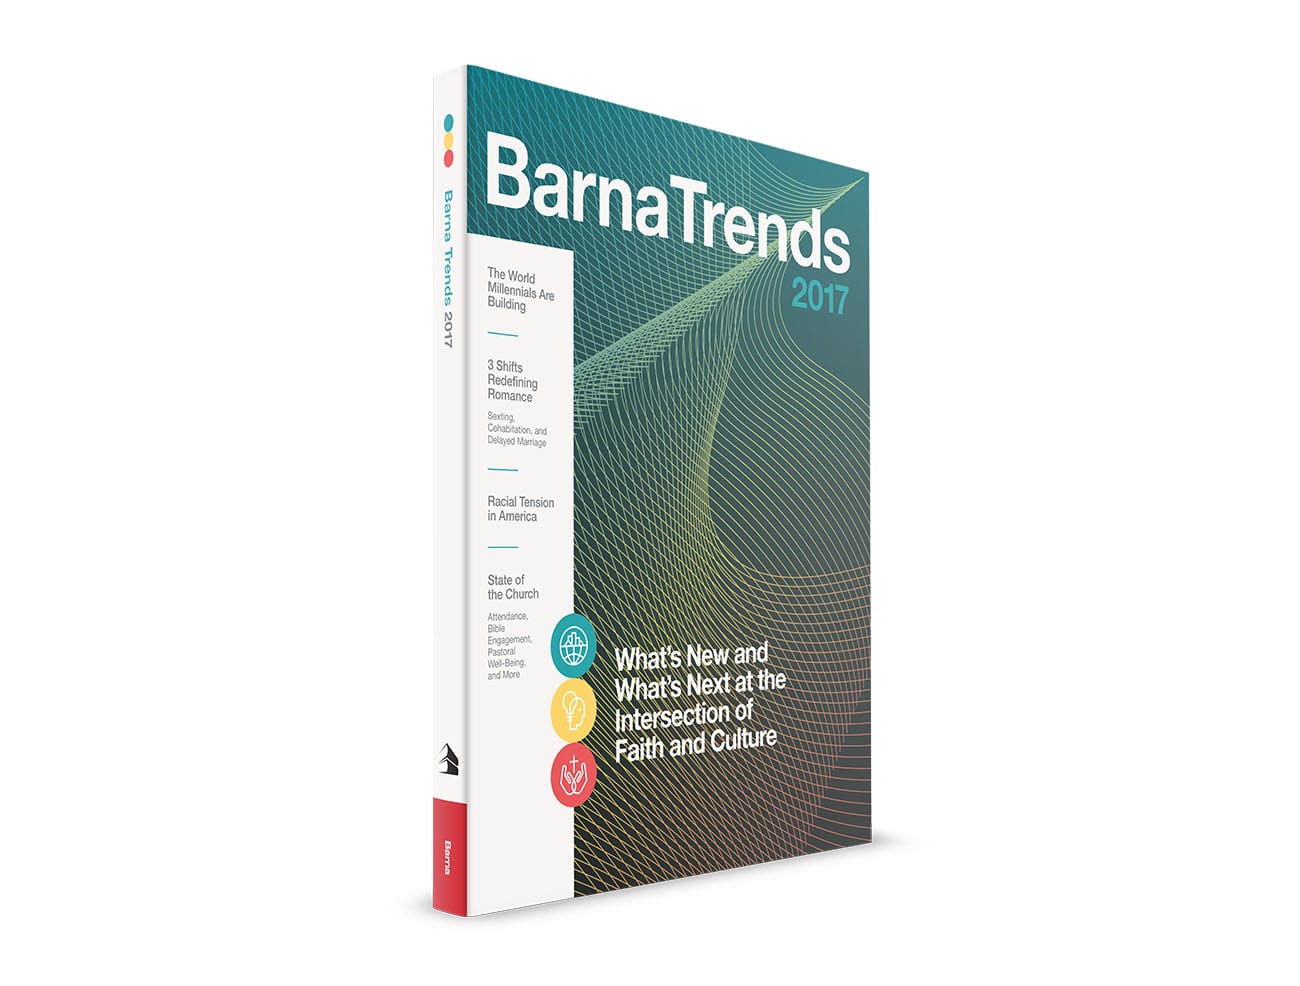 Barna Trends